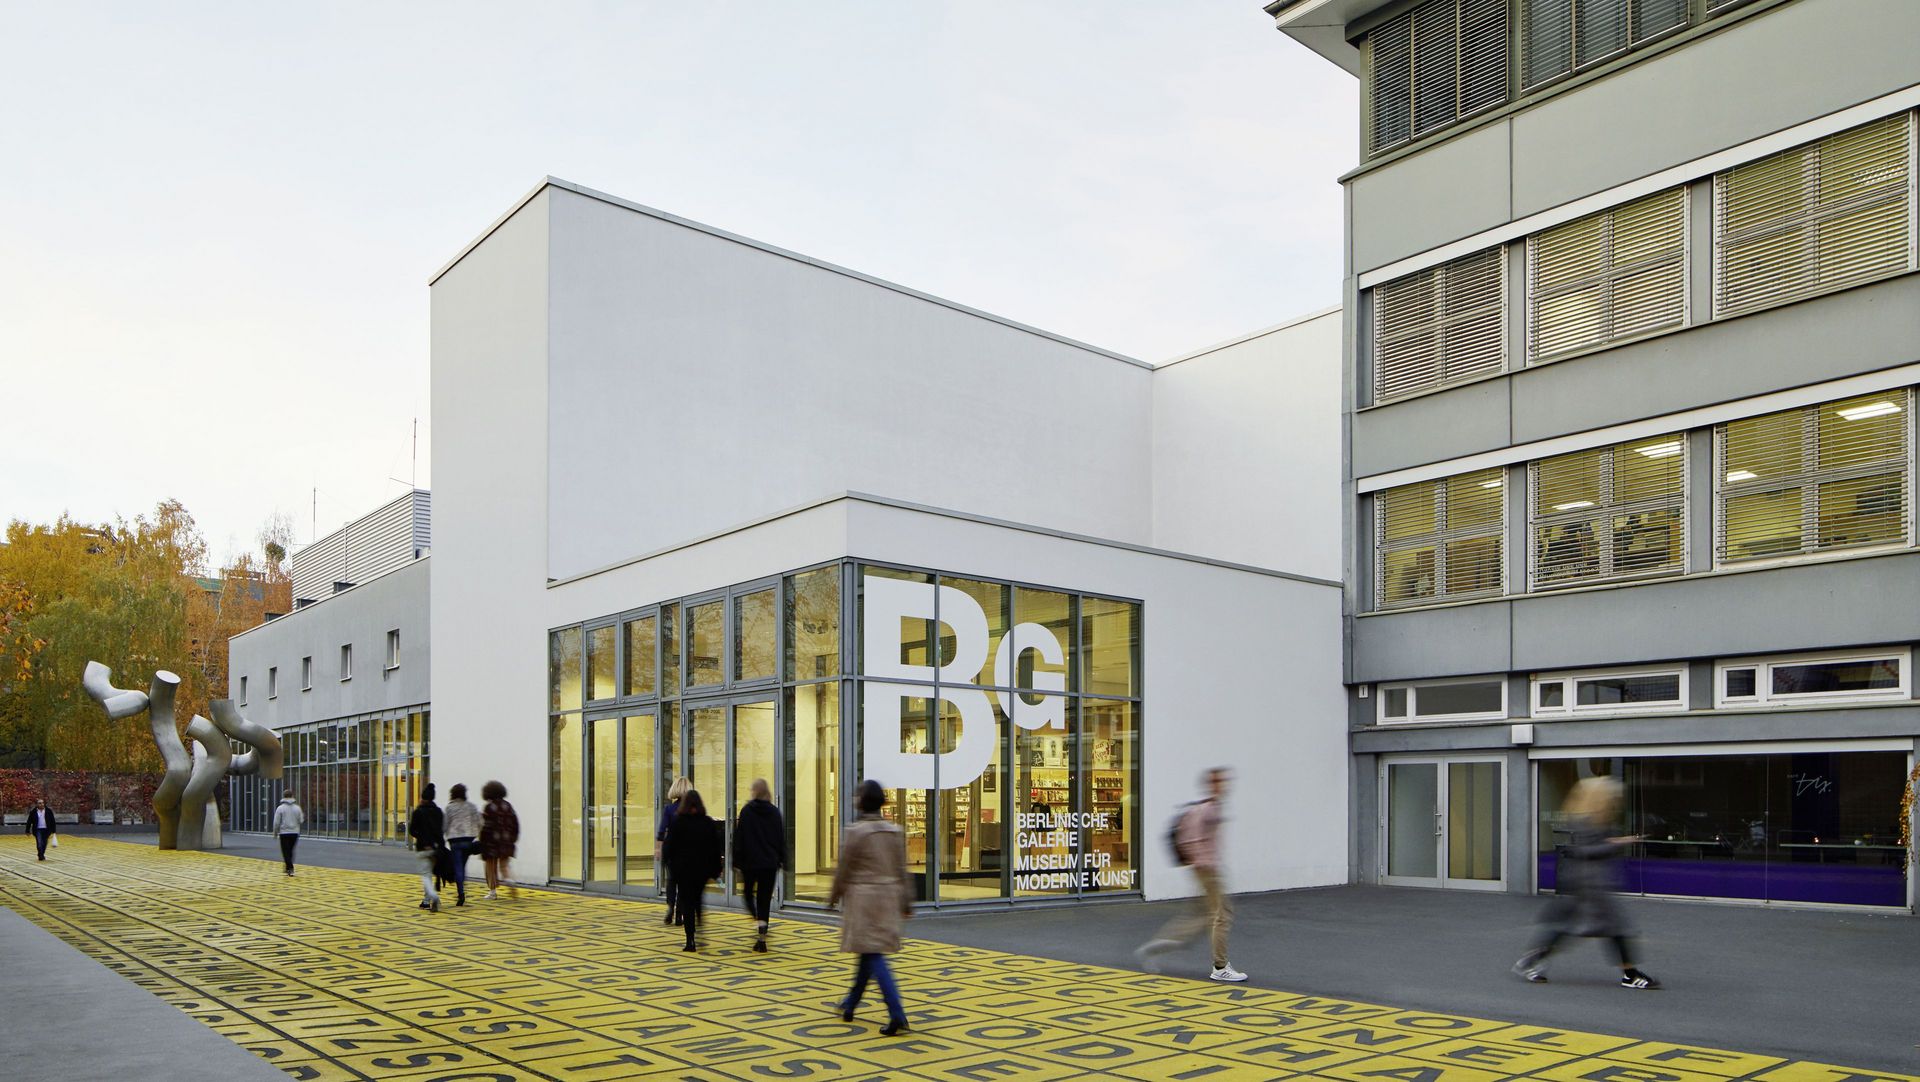 Foto: Gebäude mit Flachdach und Glasfront, auf der das Logo der Berlinischen Galerie abgebildet ist. Davor Menschen auf einem Platz mit Metallskulptur und Bodenkunstwerk.